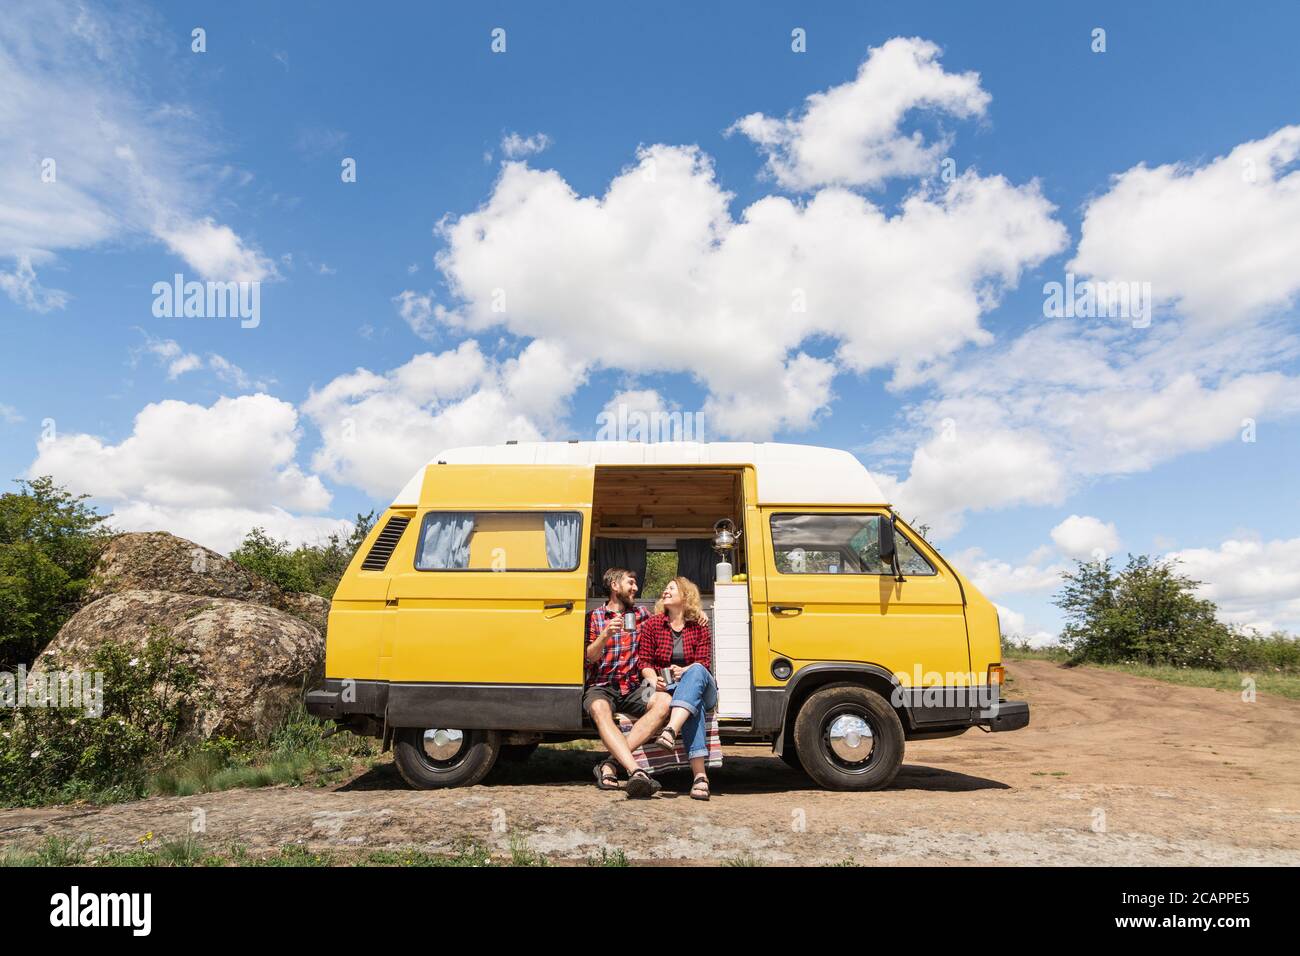 travelling van